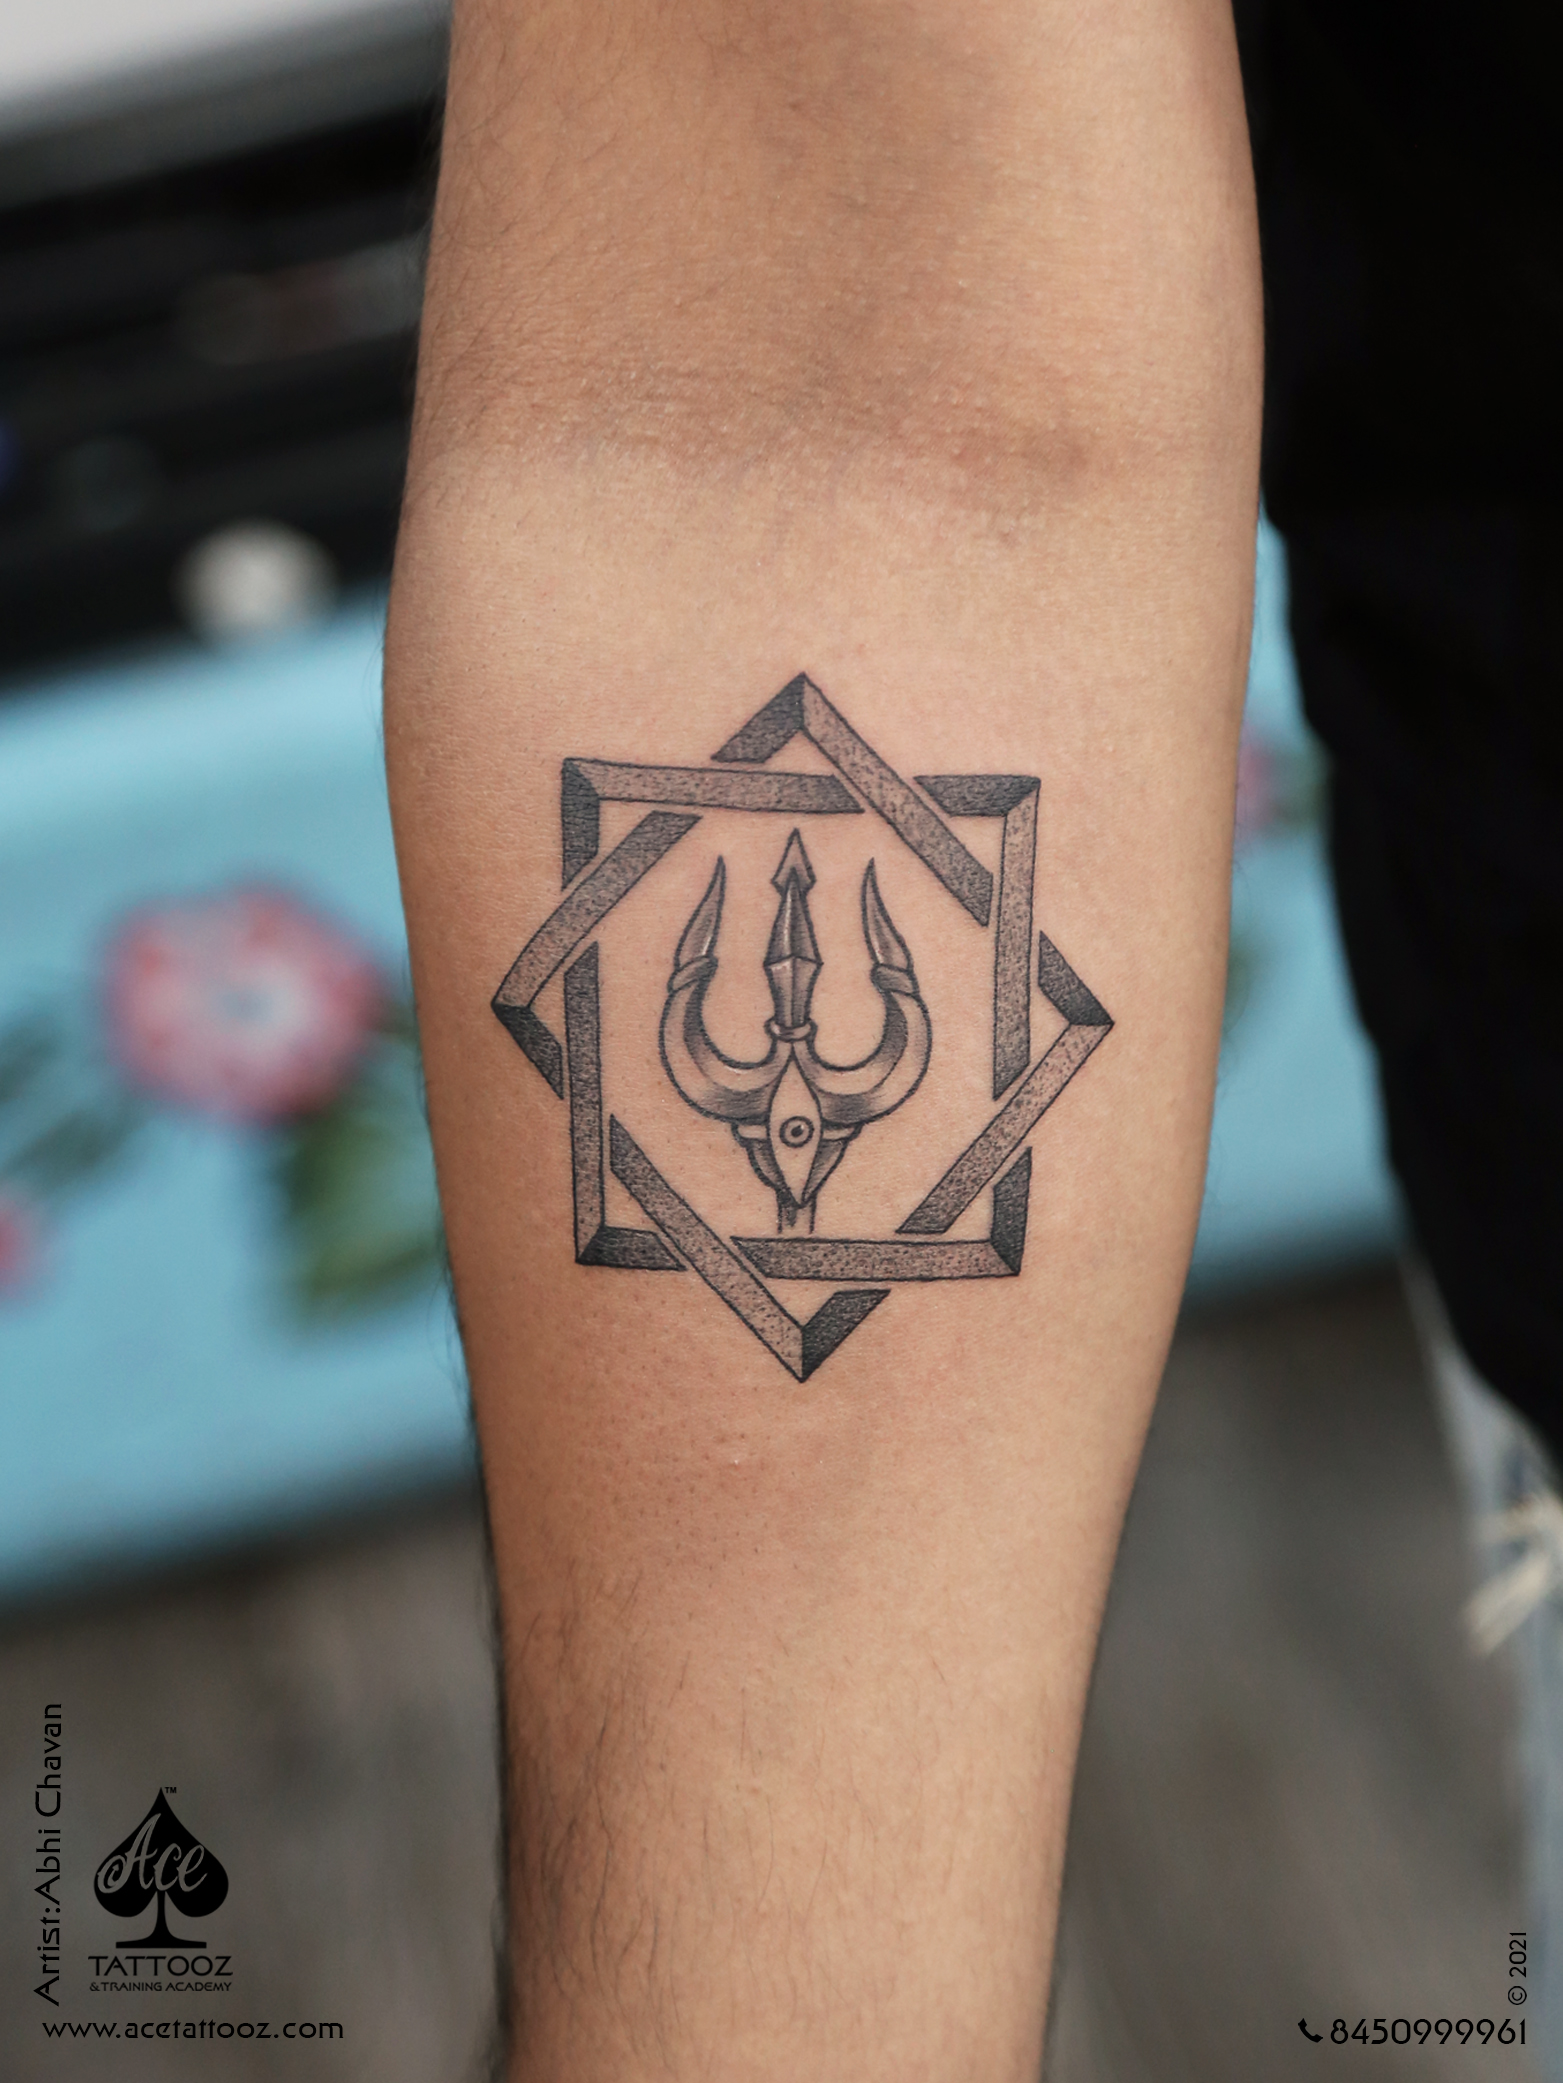 Om with trishul tattoo designs 🔥| Mahadev trishul tattoo ideas 👍 - YouTube